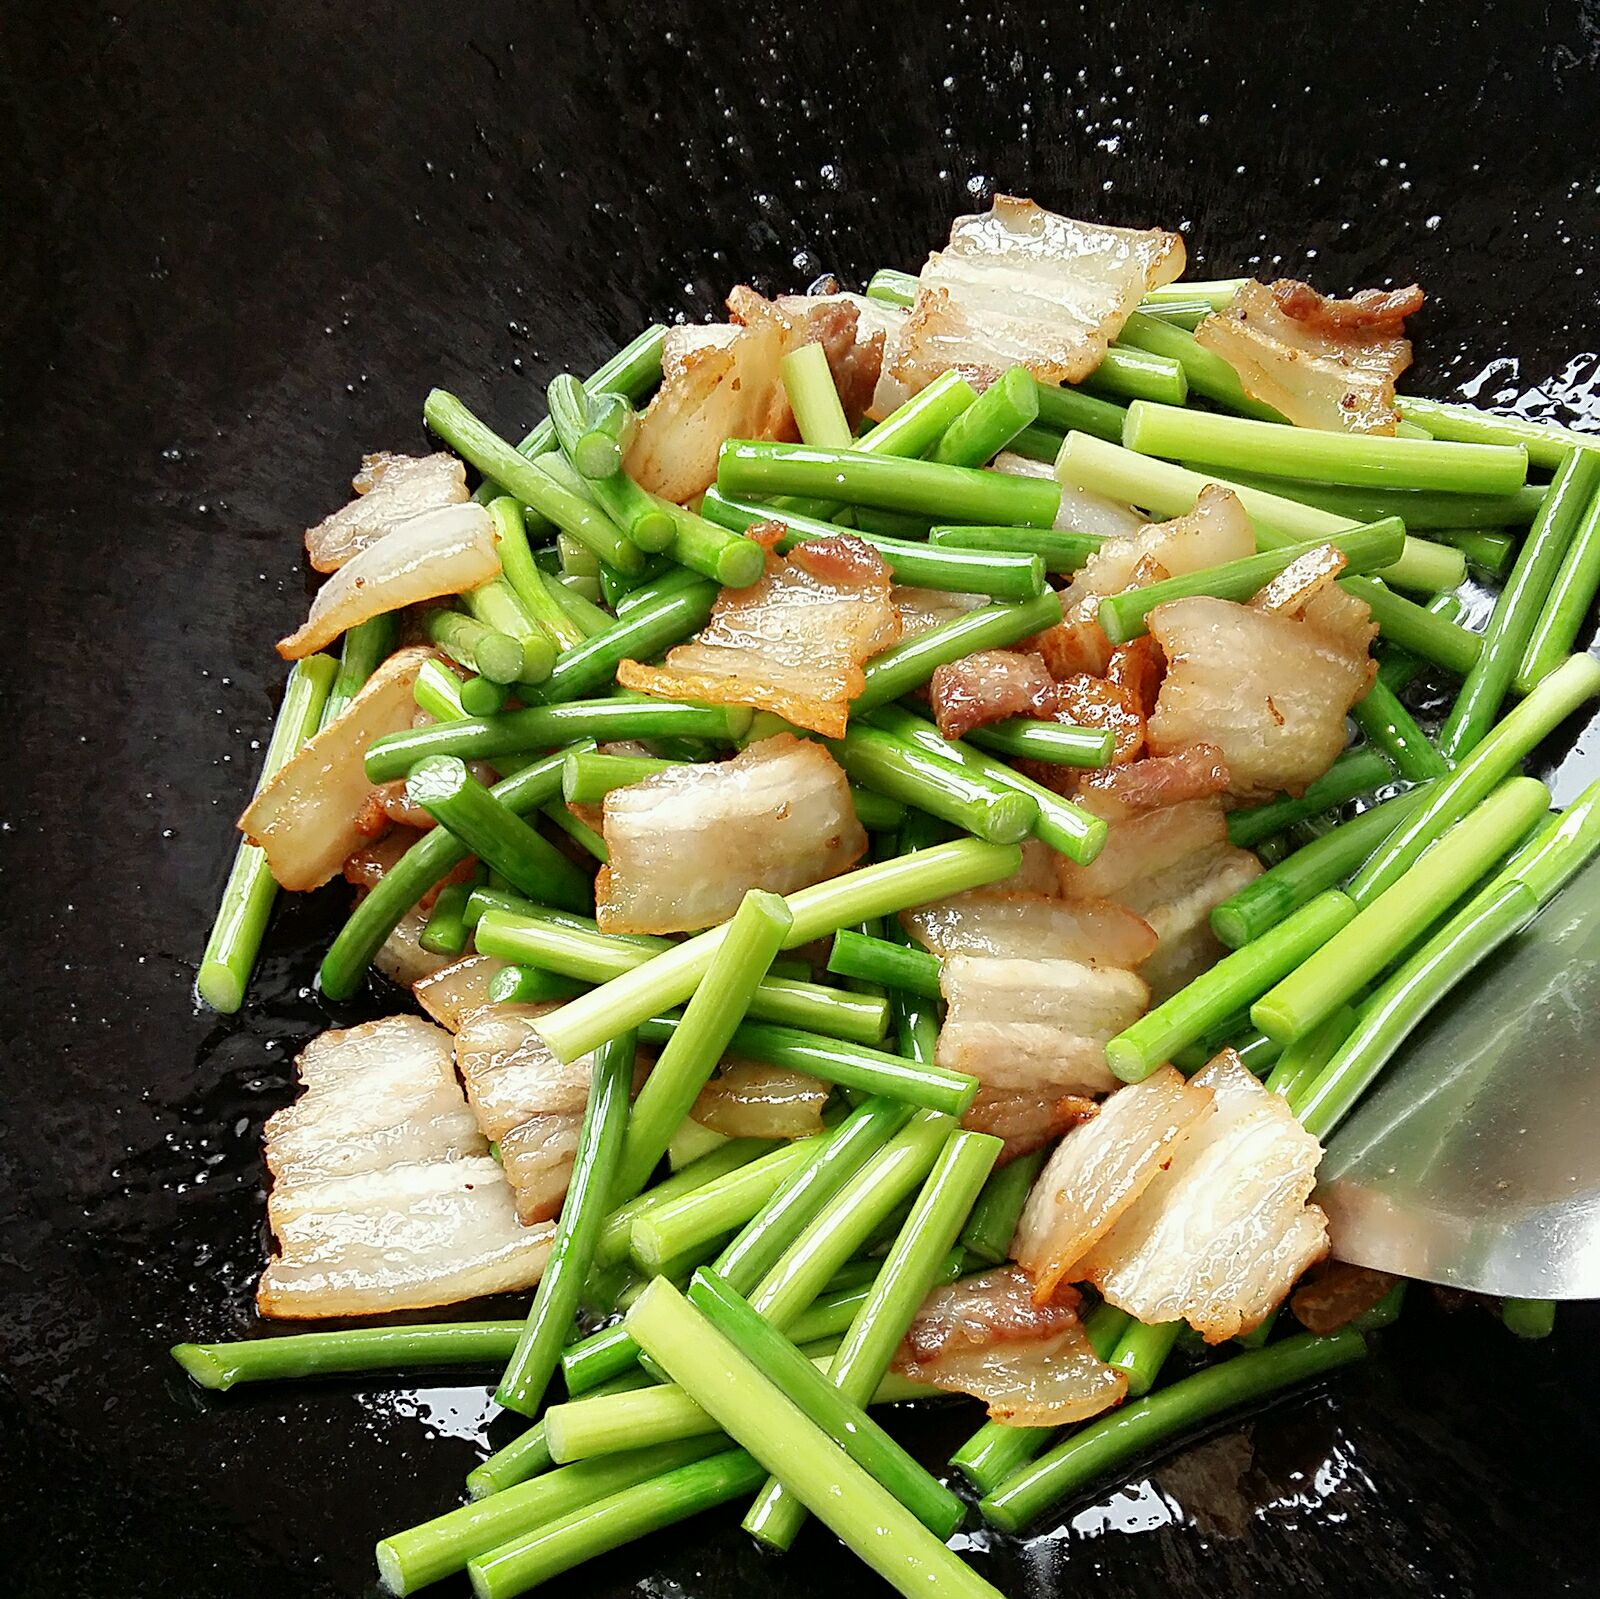 香干炒蒜苔,香干炒蒜苔的家常做法 - 美食杰香干炒蒜苔做法大全